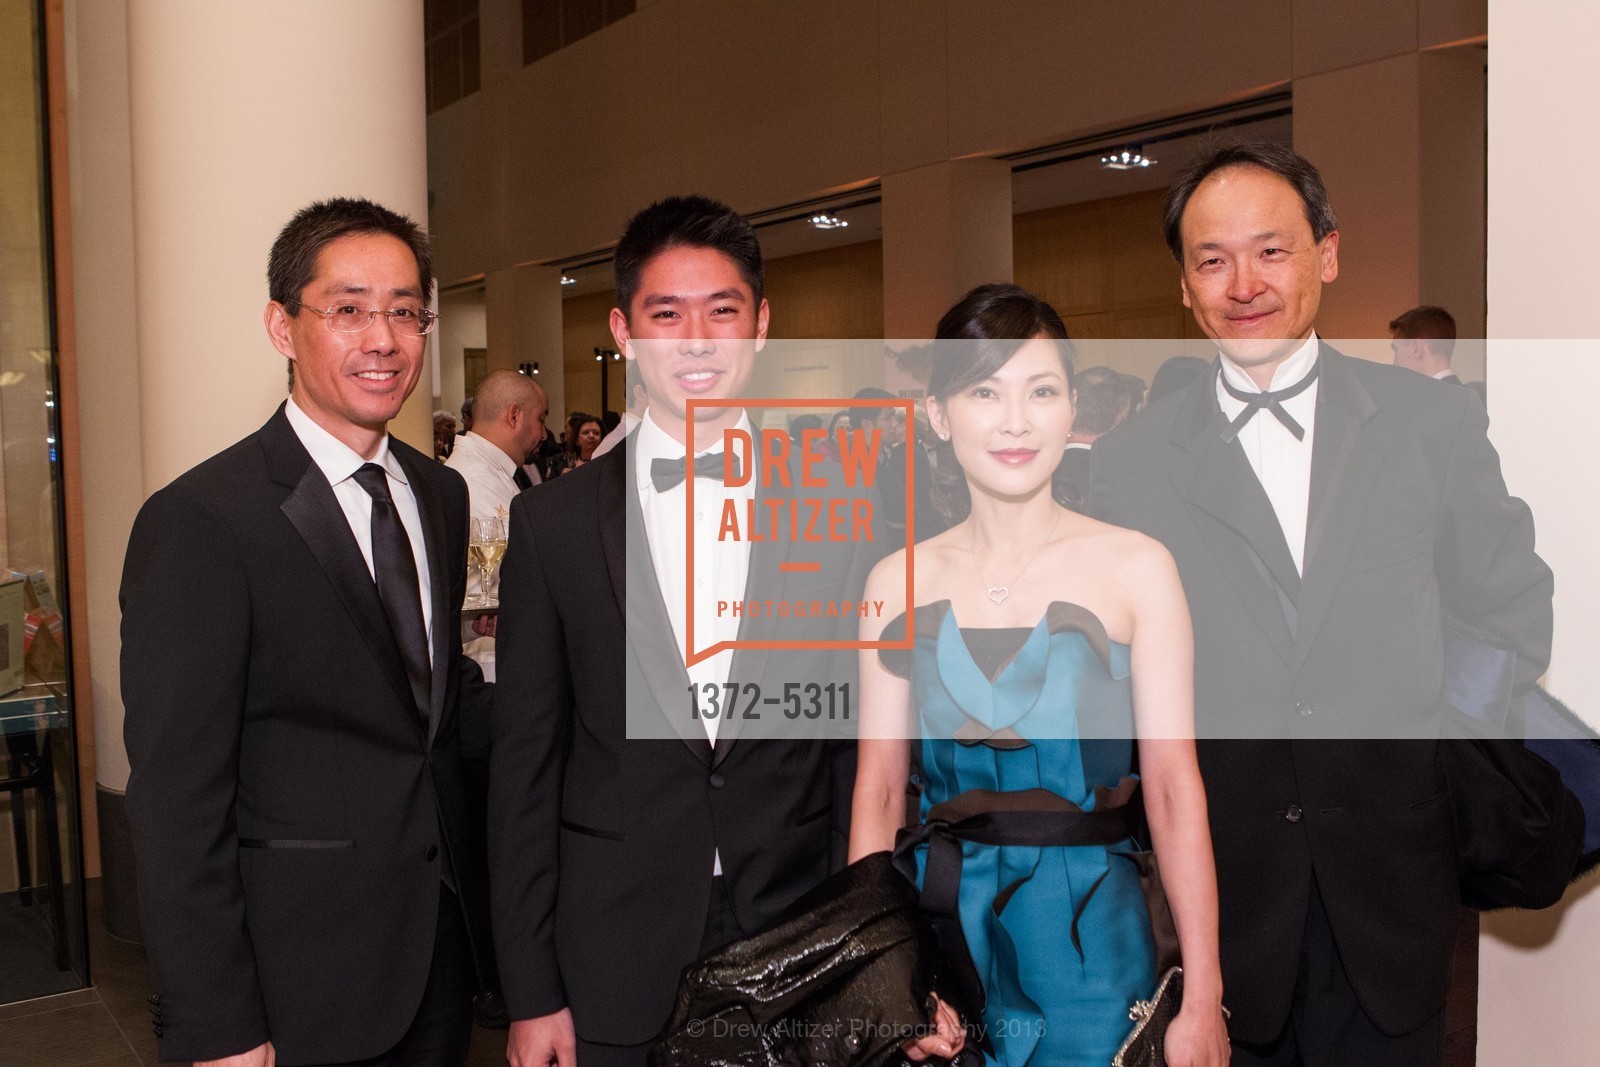 Tim Wong, Ryan Wong, Vanessa Wong, Lawrence Lui, Photo #1372-5311